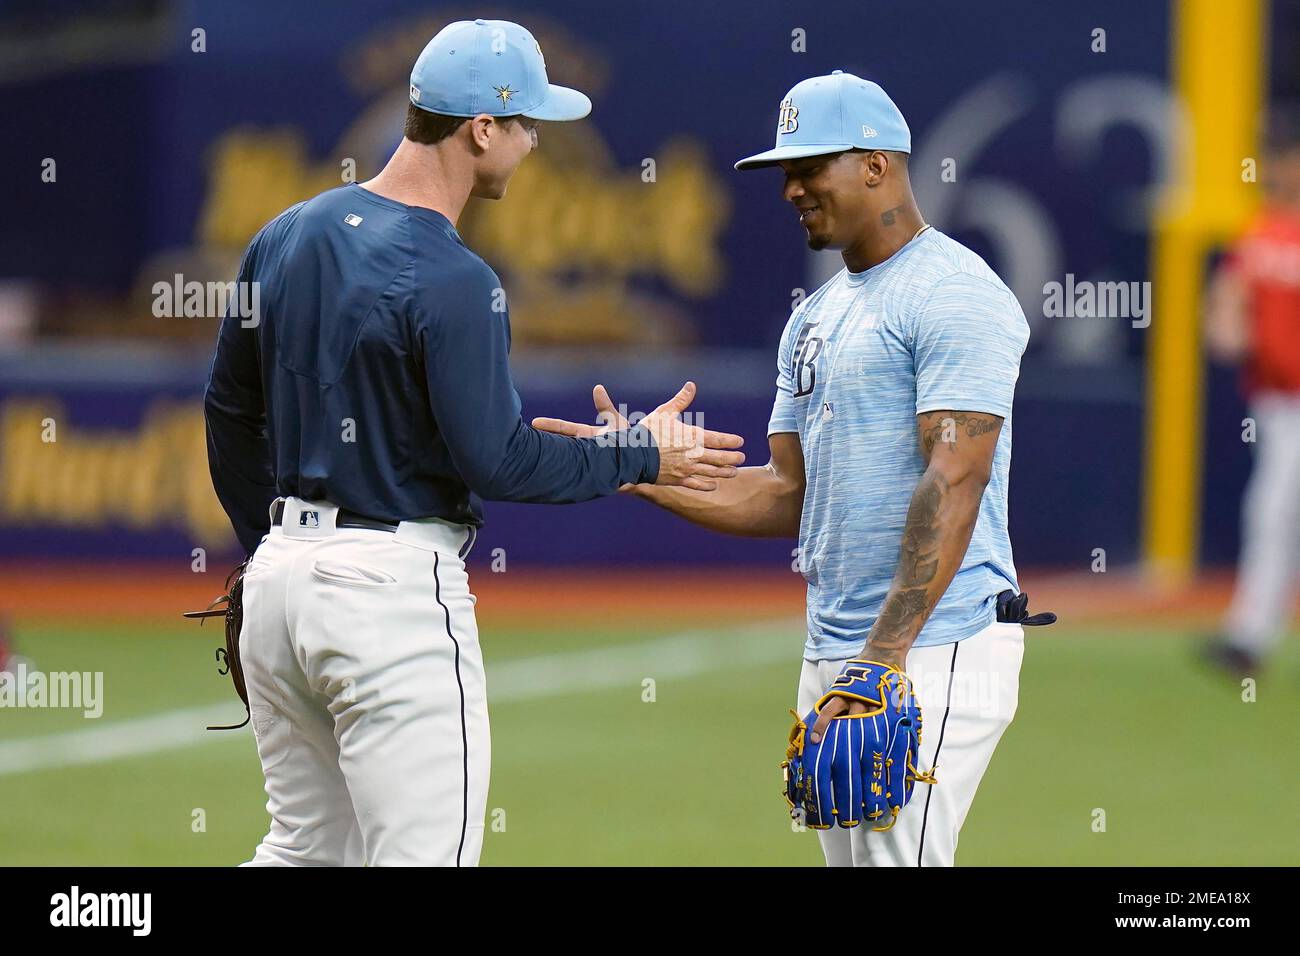 Tampa Bay Rays third baseman Wander Franco, right, shakes hands